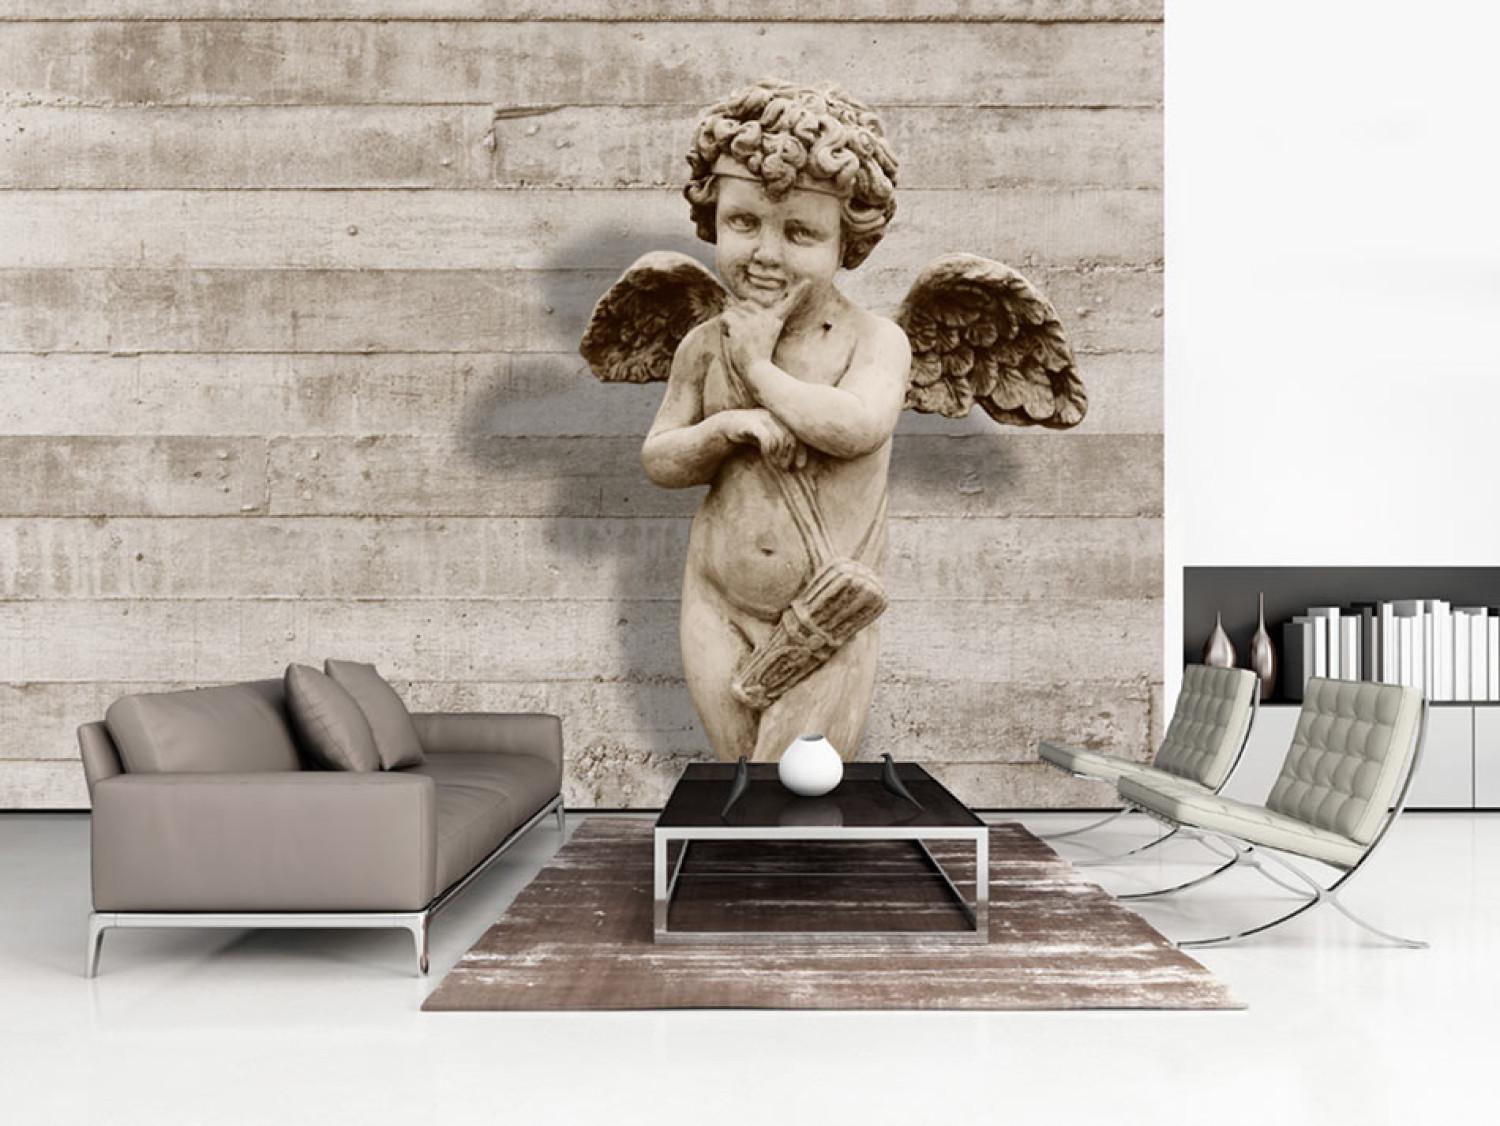 Fotomural decorativo Querubín - Escultura de angelito adorable estilo retro